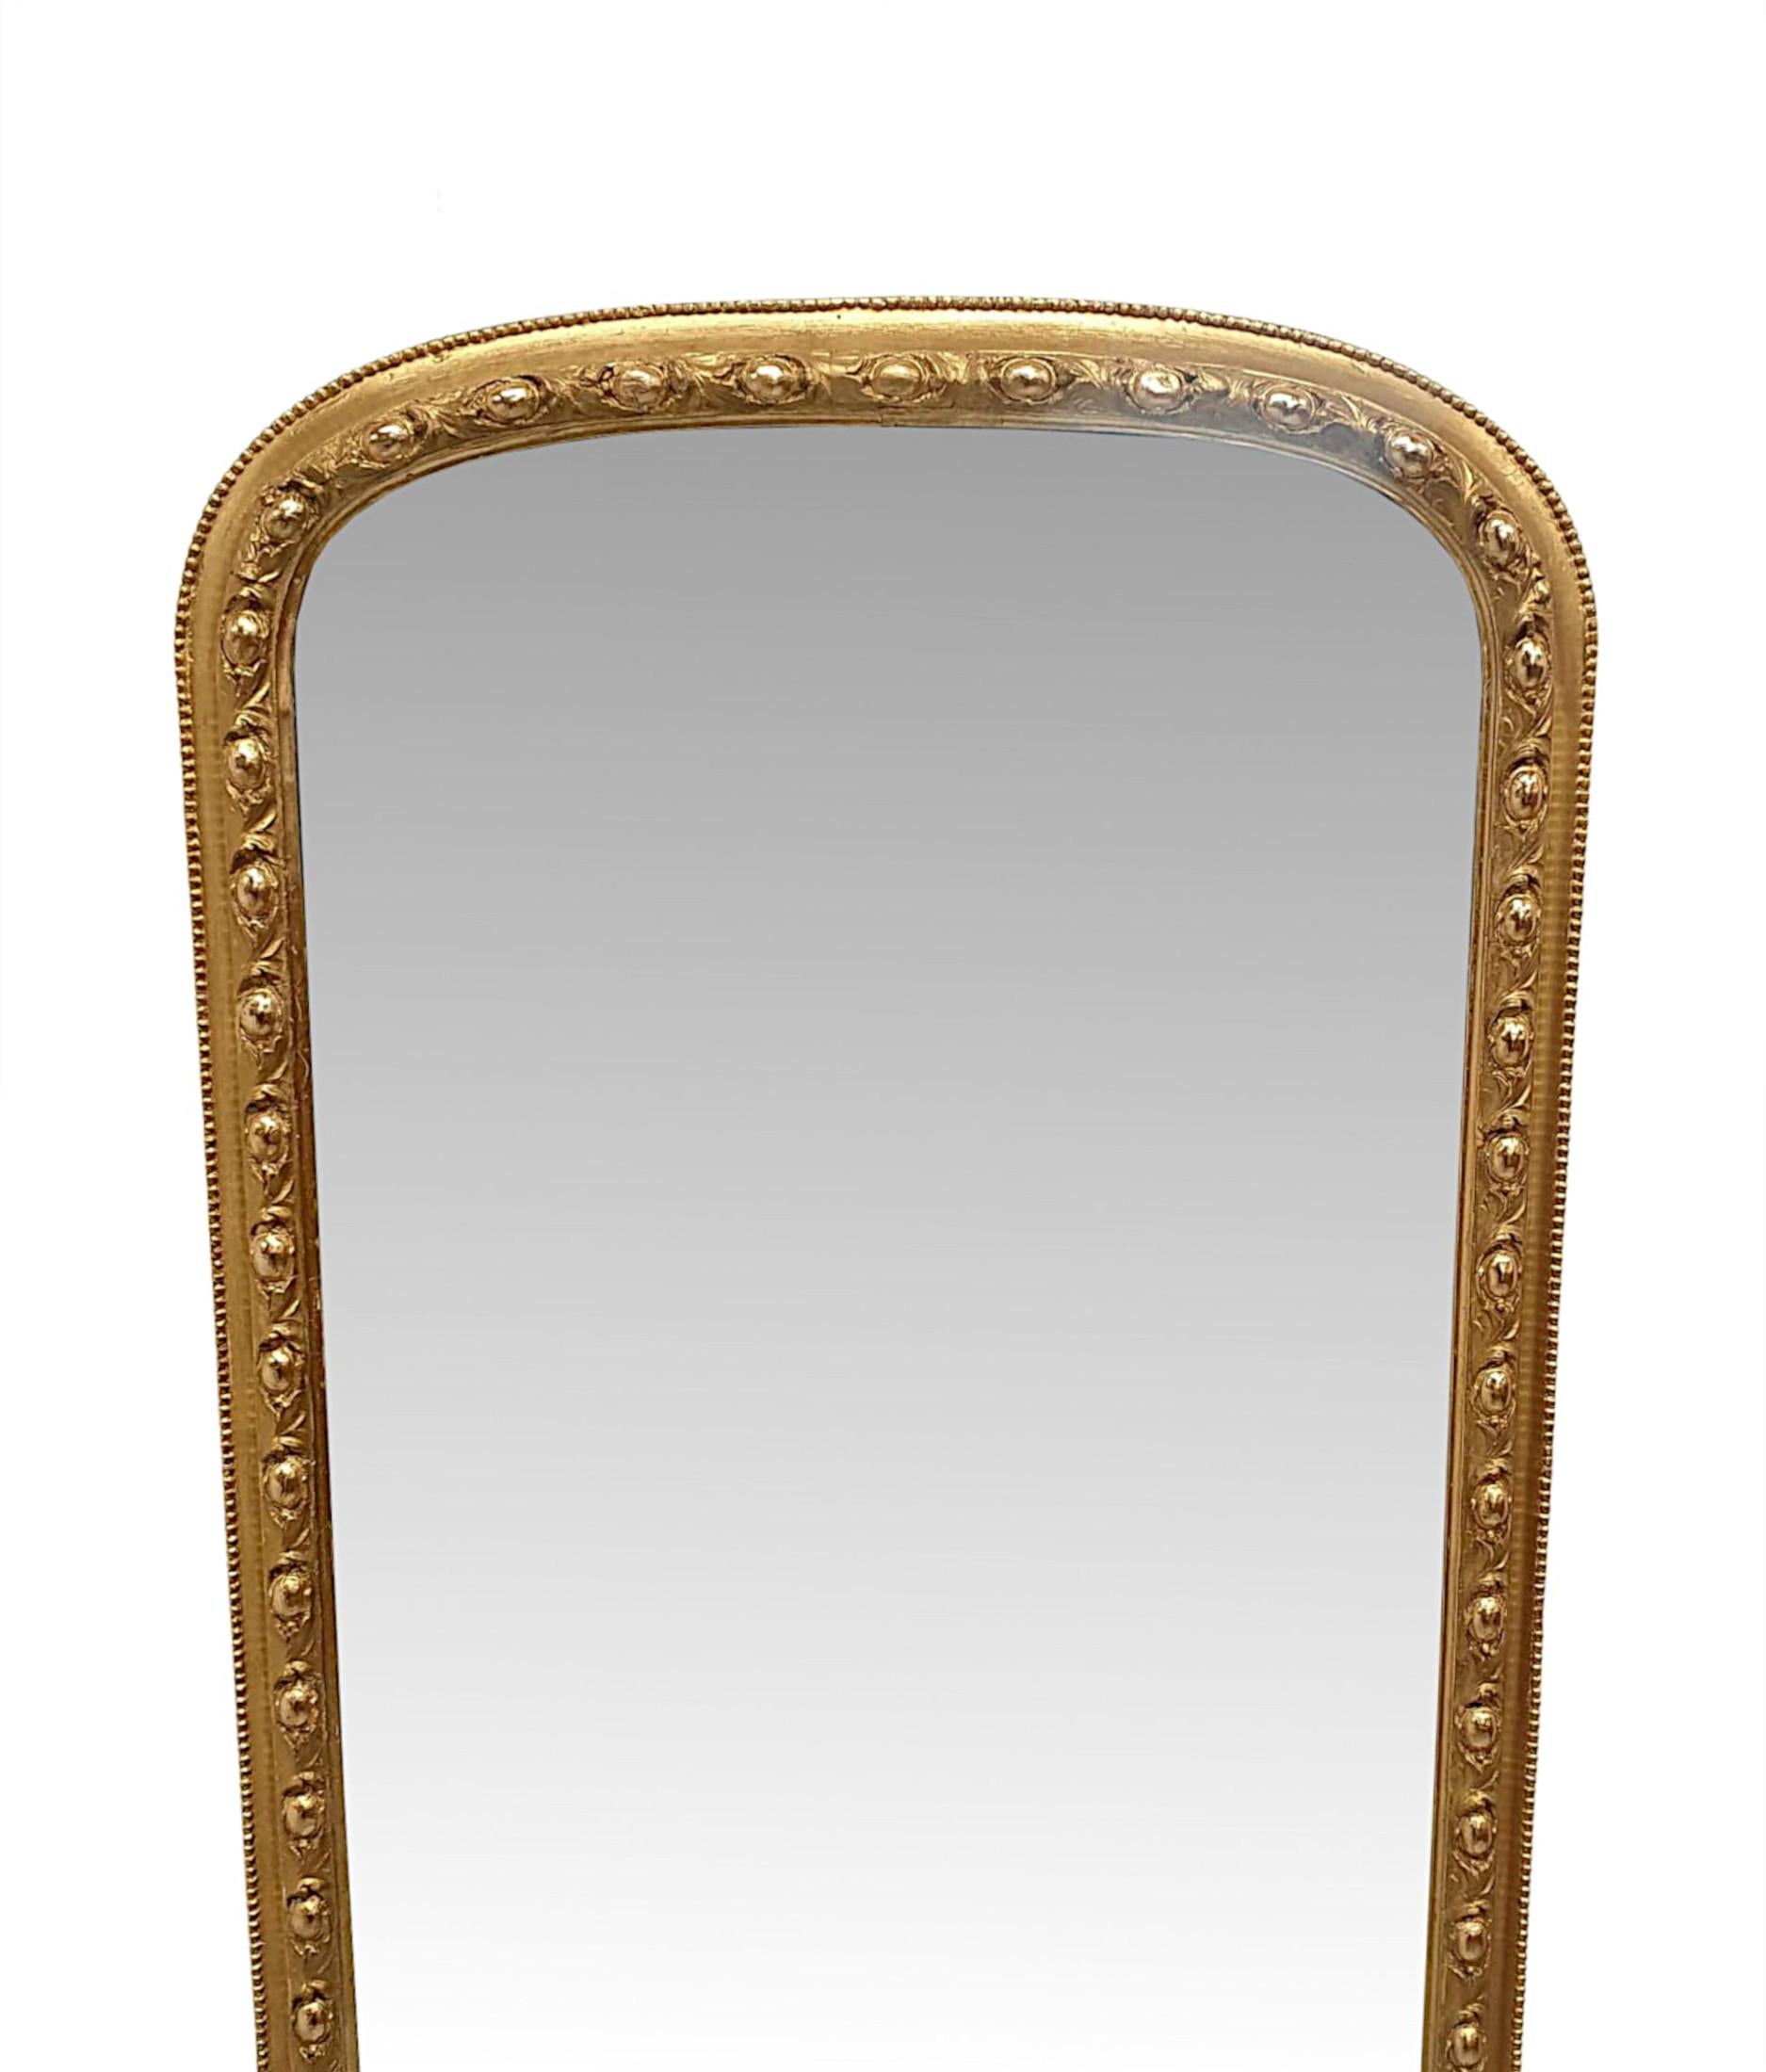 Un très rare et fin miroir de coiffeuse ou de jetée en bois doré du XIXe siècle, d'une qualité exceptionnelle et aux proportions à la fois hautes et étroites.  La plaque de verre miroir est enchâssée dans un cadre en bois doré finement sculpté à la